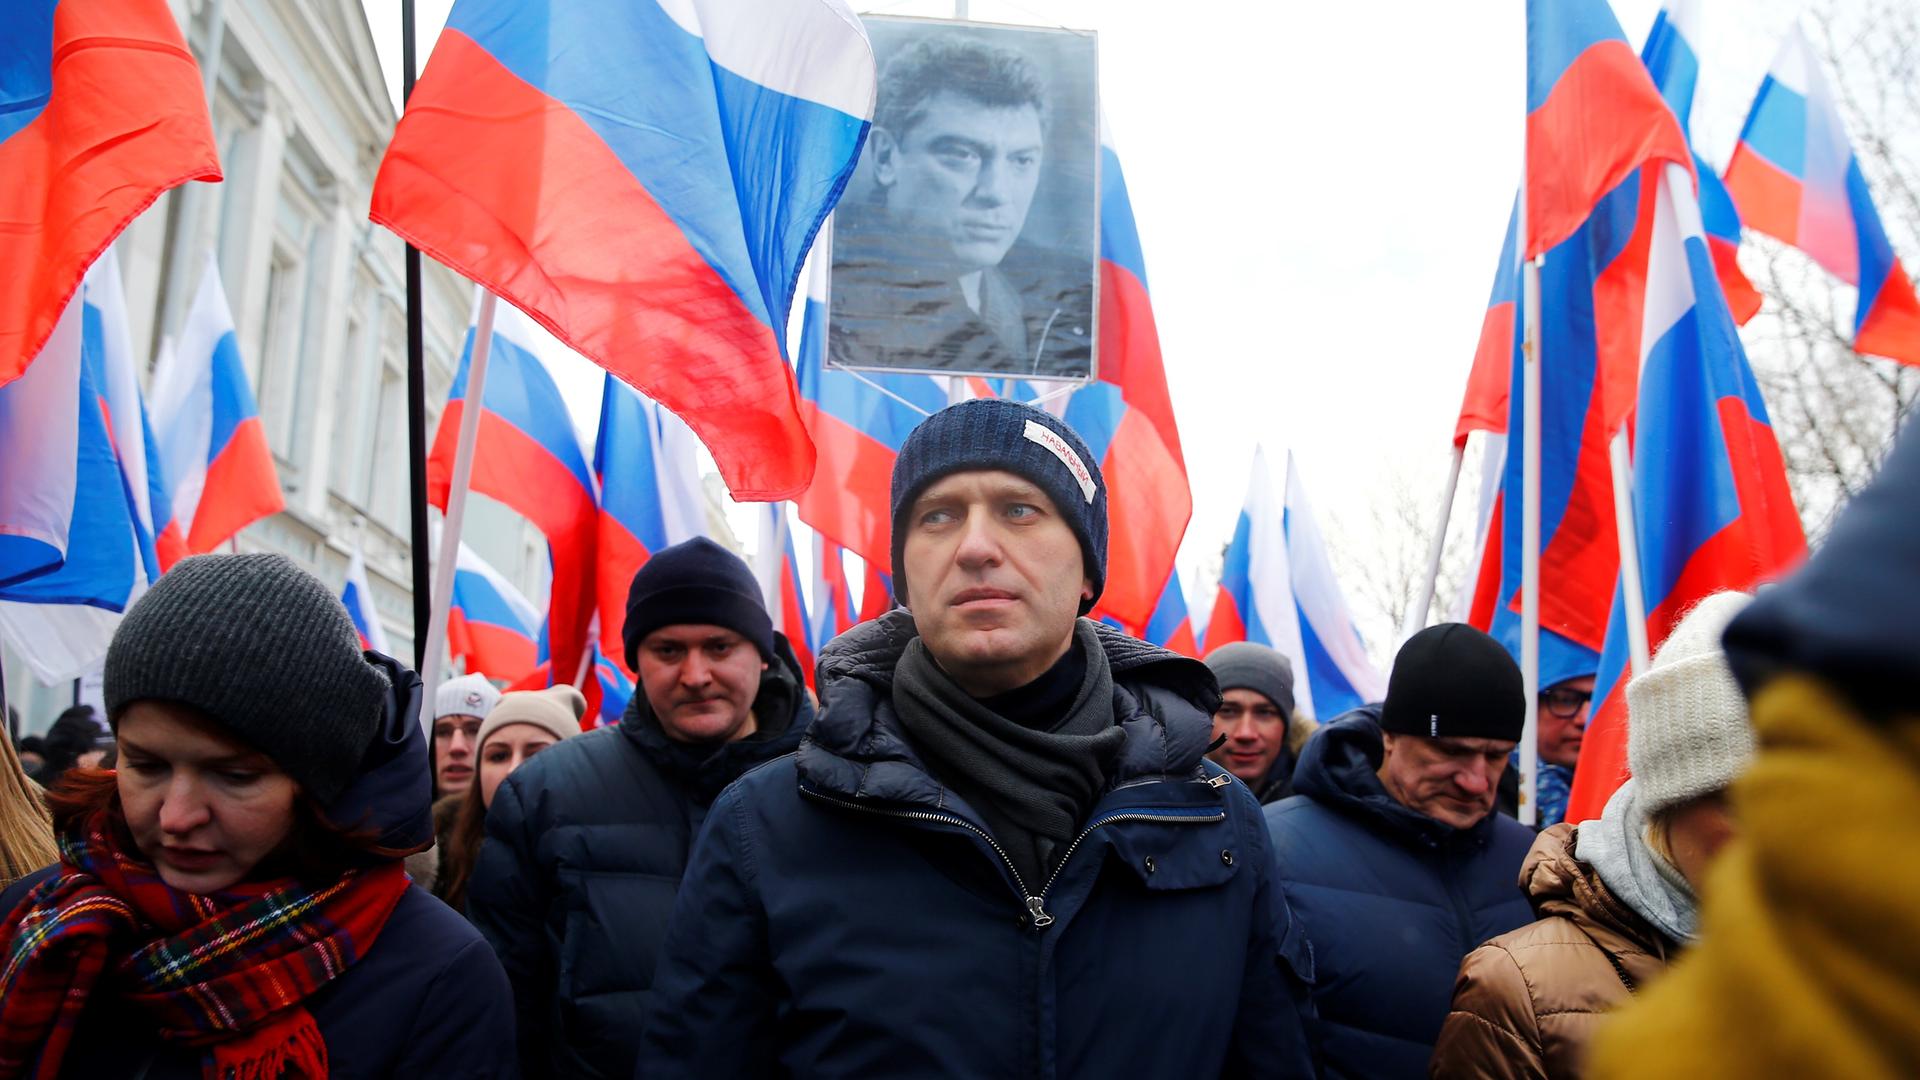 Alexej Nawalny bei einem Marsch in Gedenken an den oppositionellen Boris Nemtsow 2015. Er trägt eine dunkle Wollmütze und eine dunkelblaue Winterjacke. Hinter ihm gehen viele Menschen, die zum Teil russische Fahnen hochhalten. Jemand hält ein an einem Stab befestigte Schwarz-Weiß-Foto von Boris Nemtsow hoch.